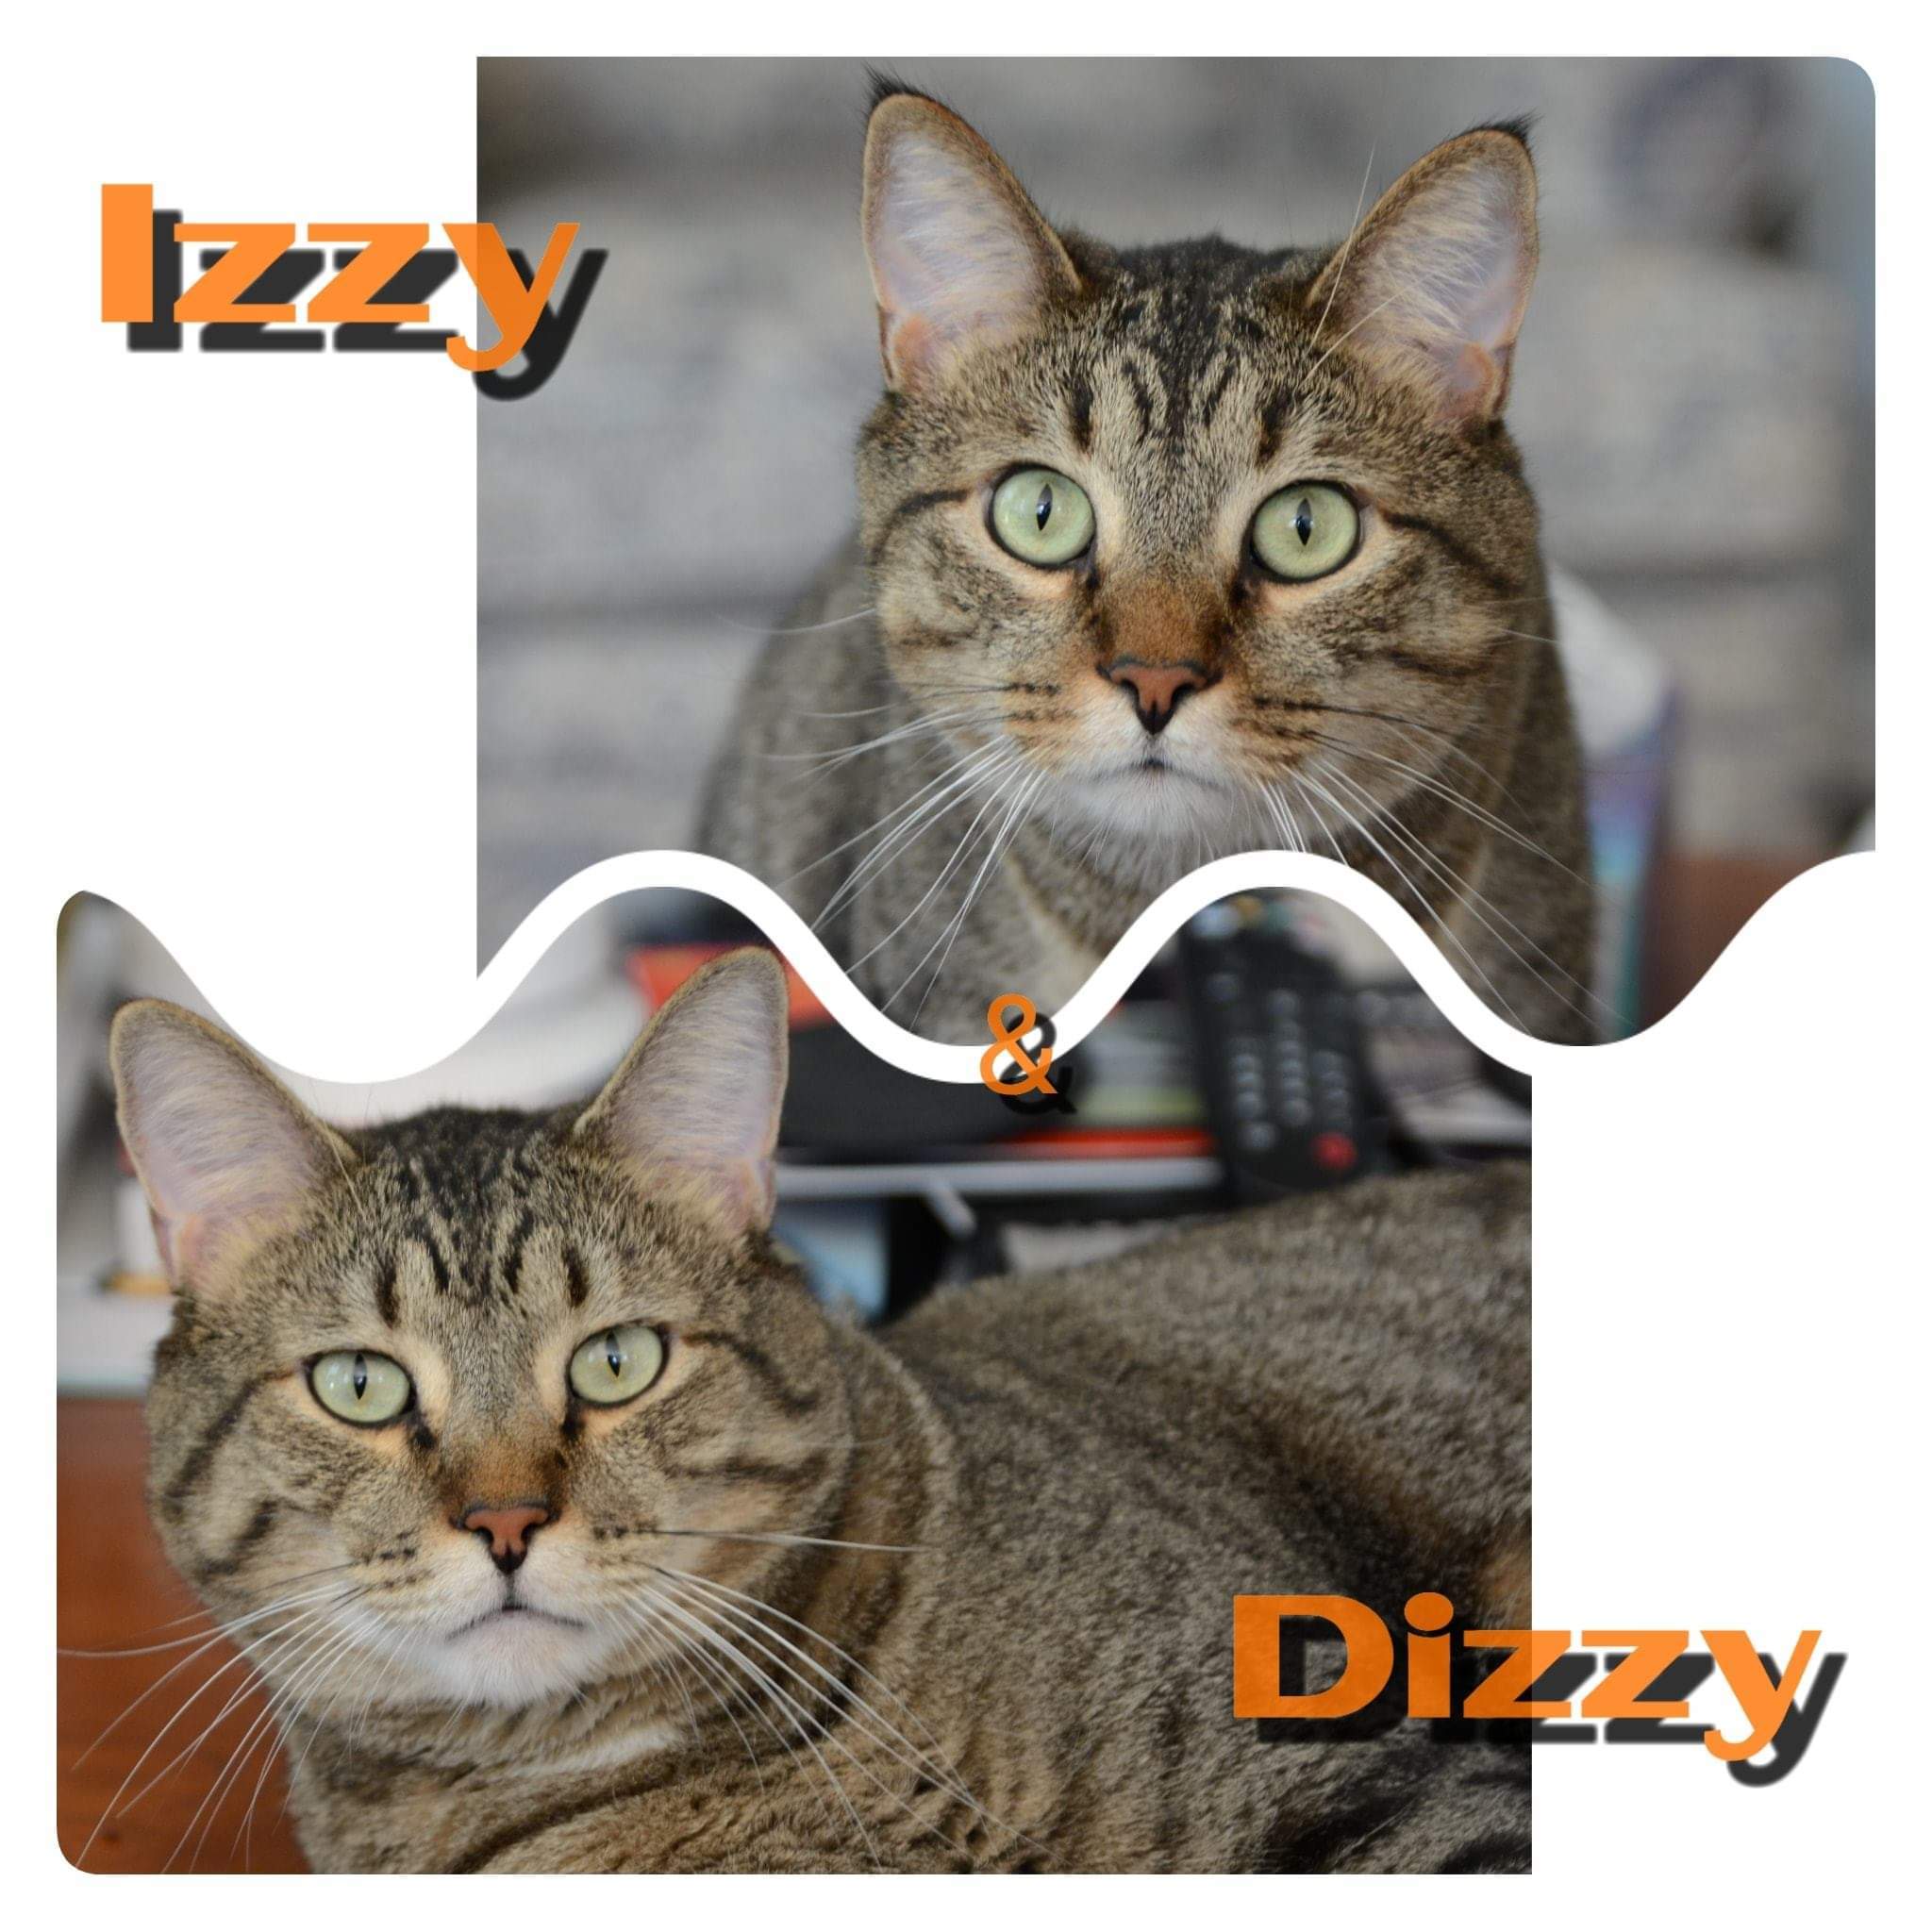 Dizzy detail page